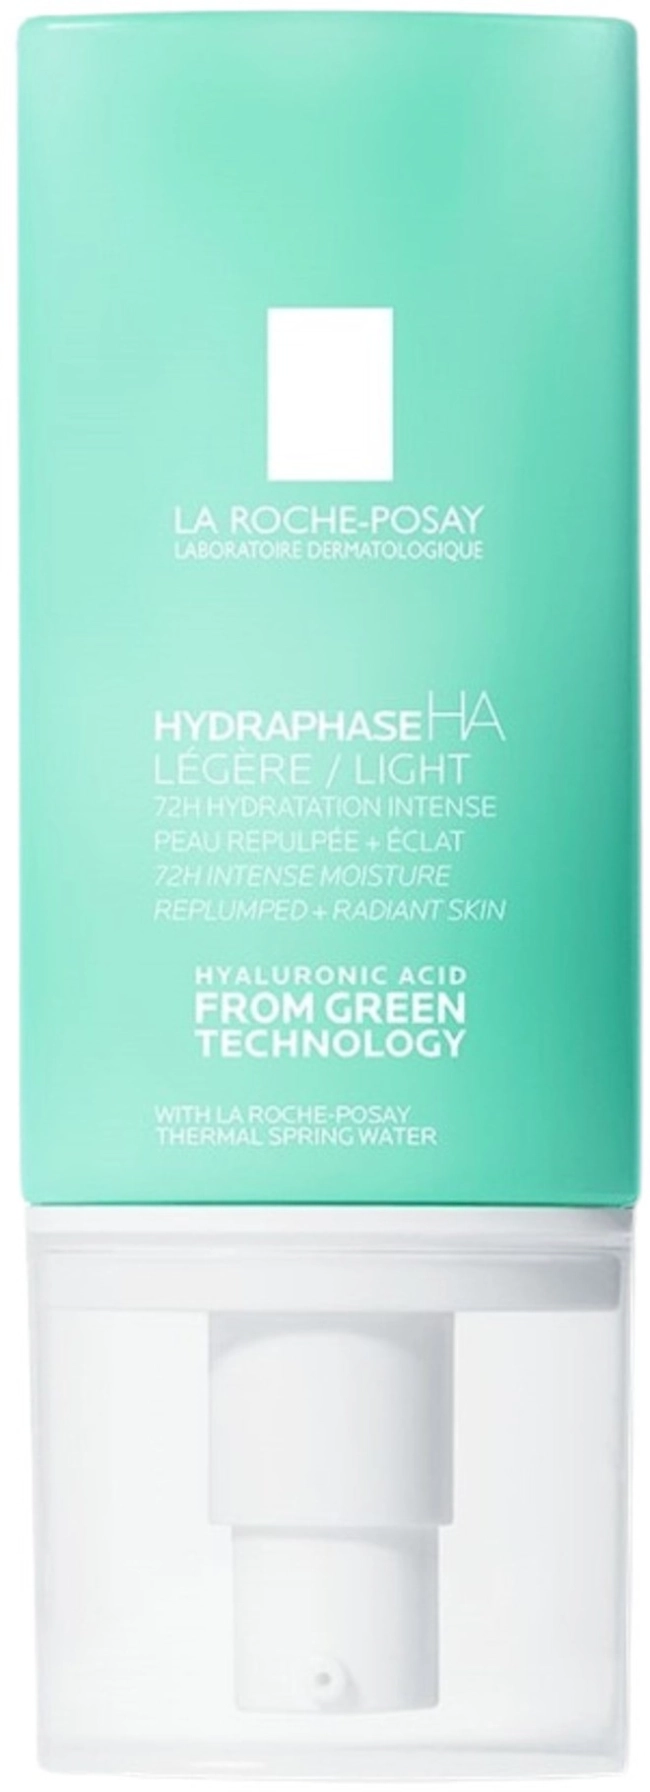 La Roche-Posay Hydraphase HA Legere Лек крем за лице за дехидратирана нормална към смесена кожа 50мл